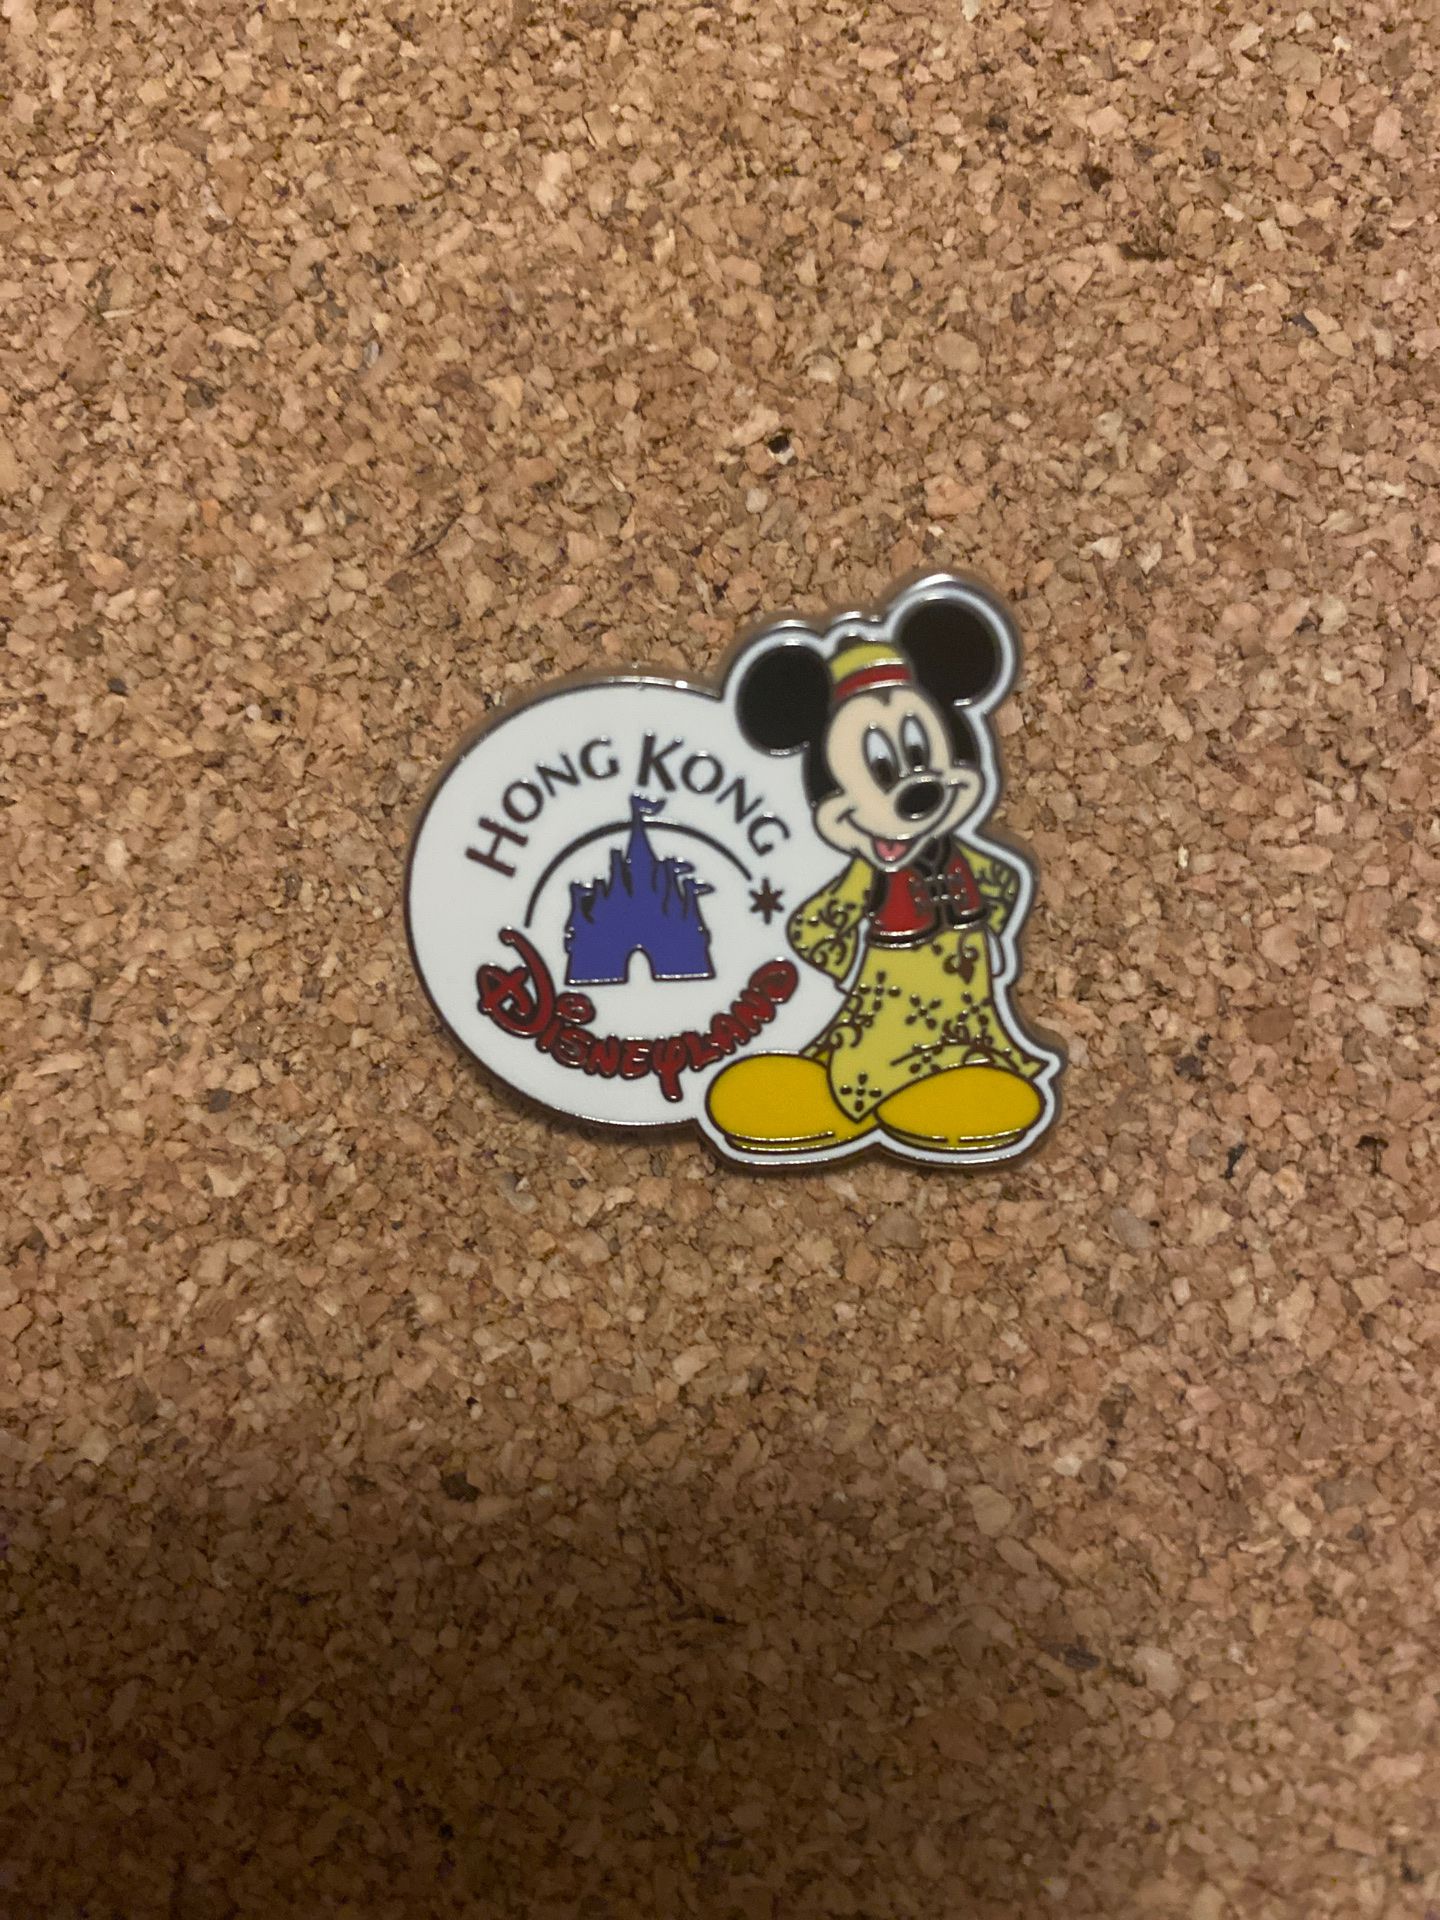 Hong Kong Mickey pin